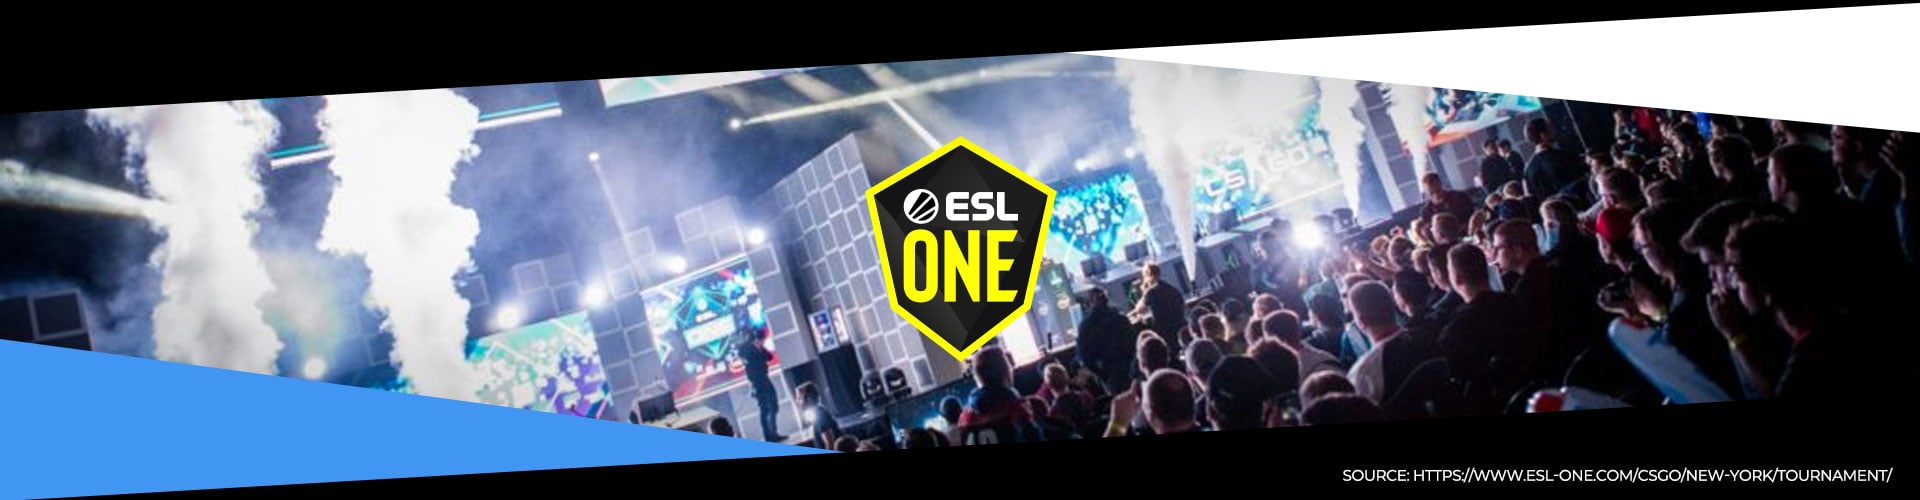 Eventsida för ESL One New York och turnering för CS:GO.